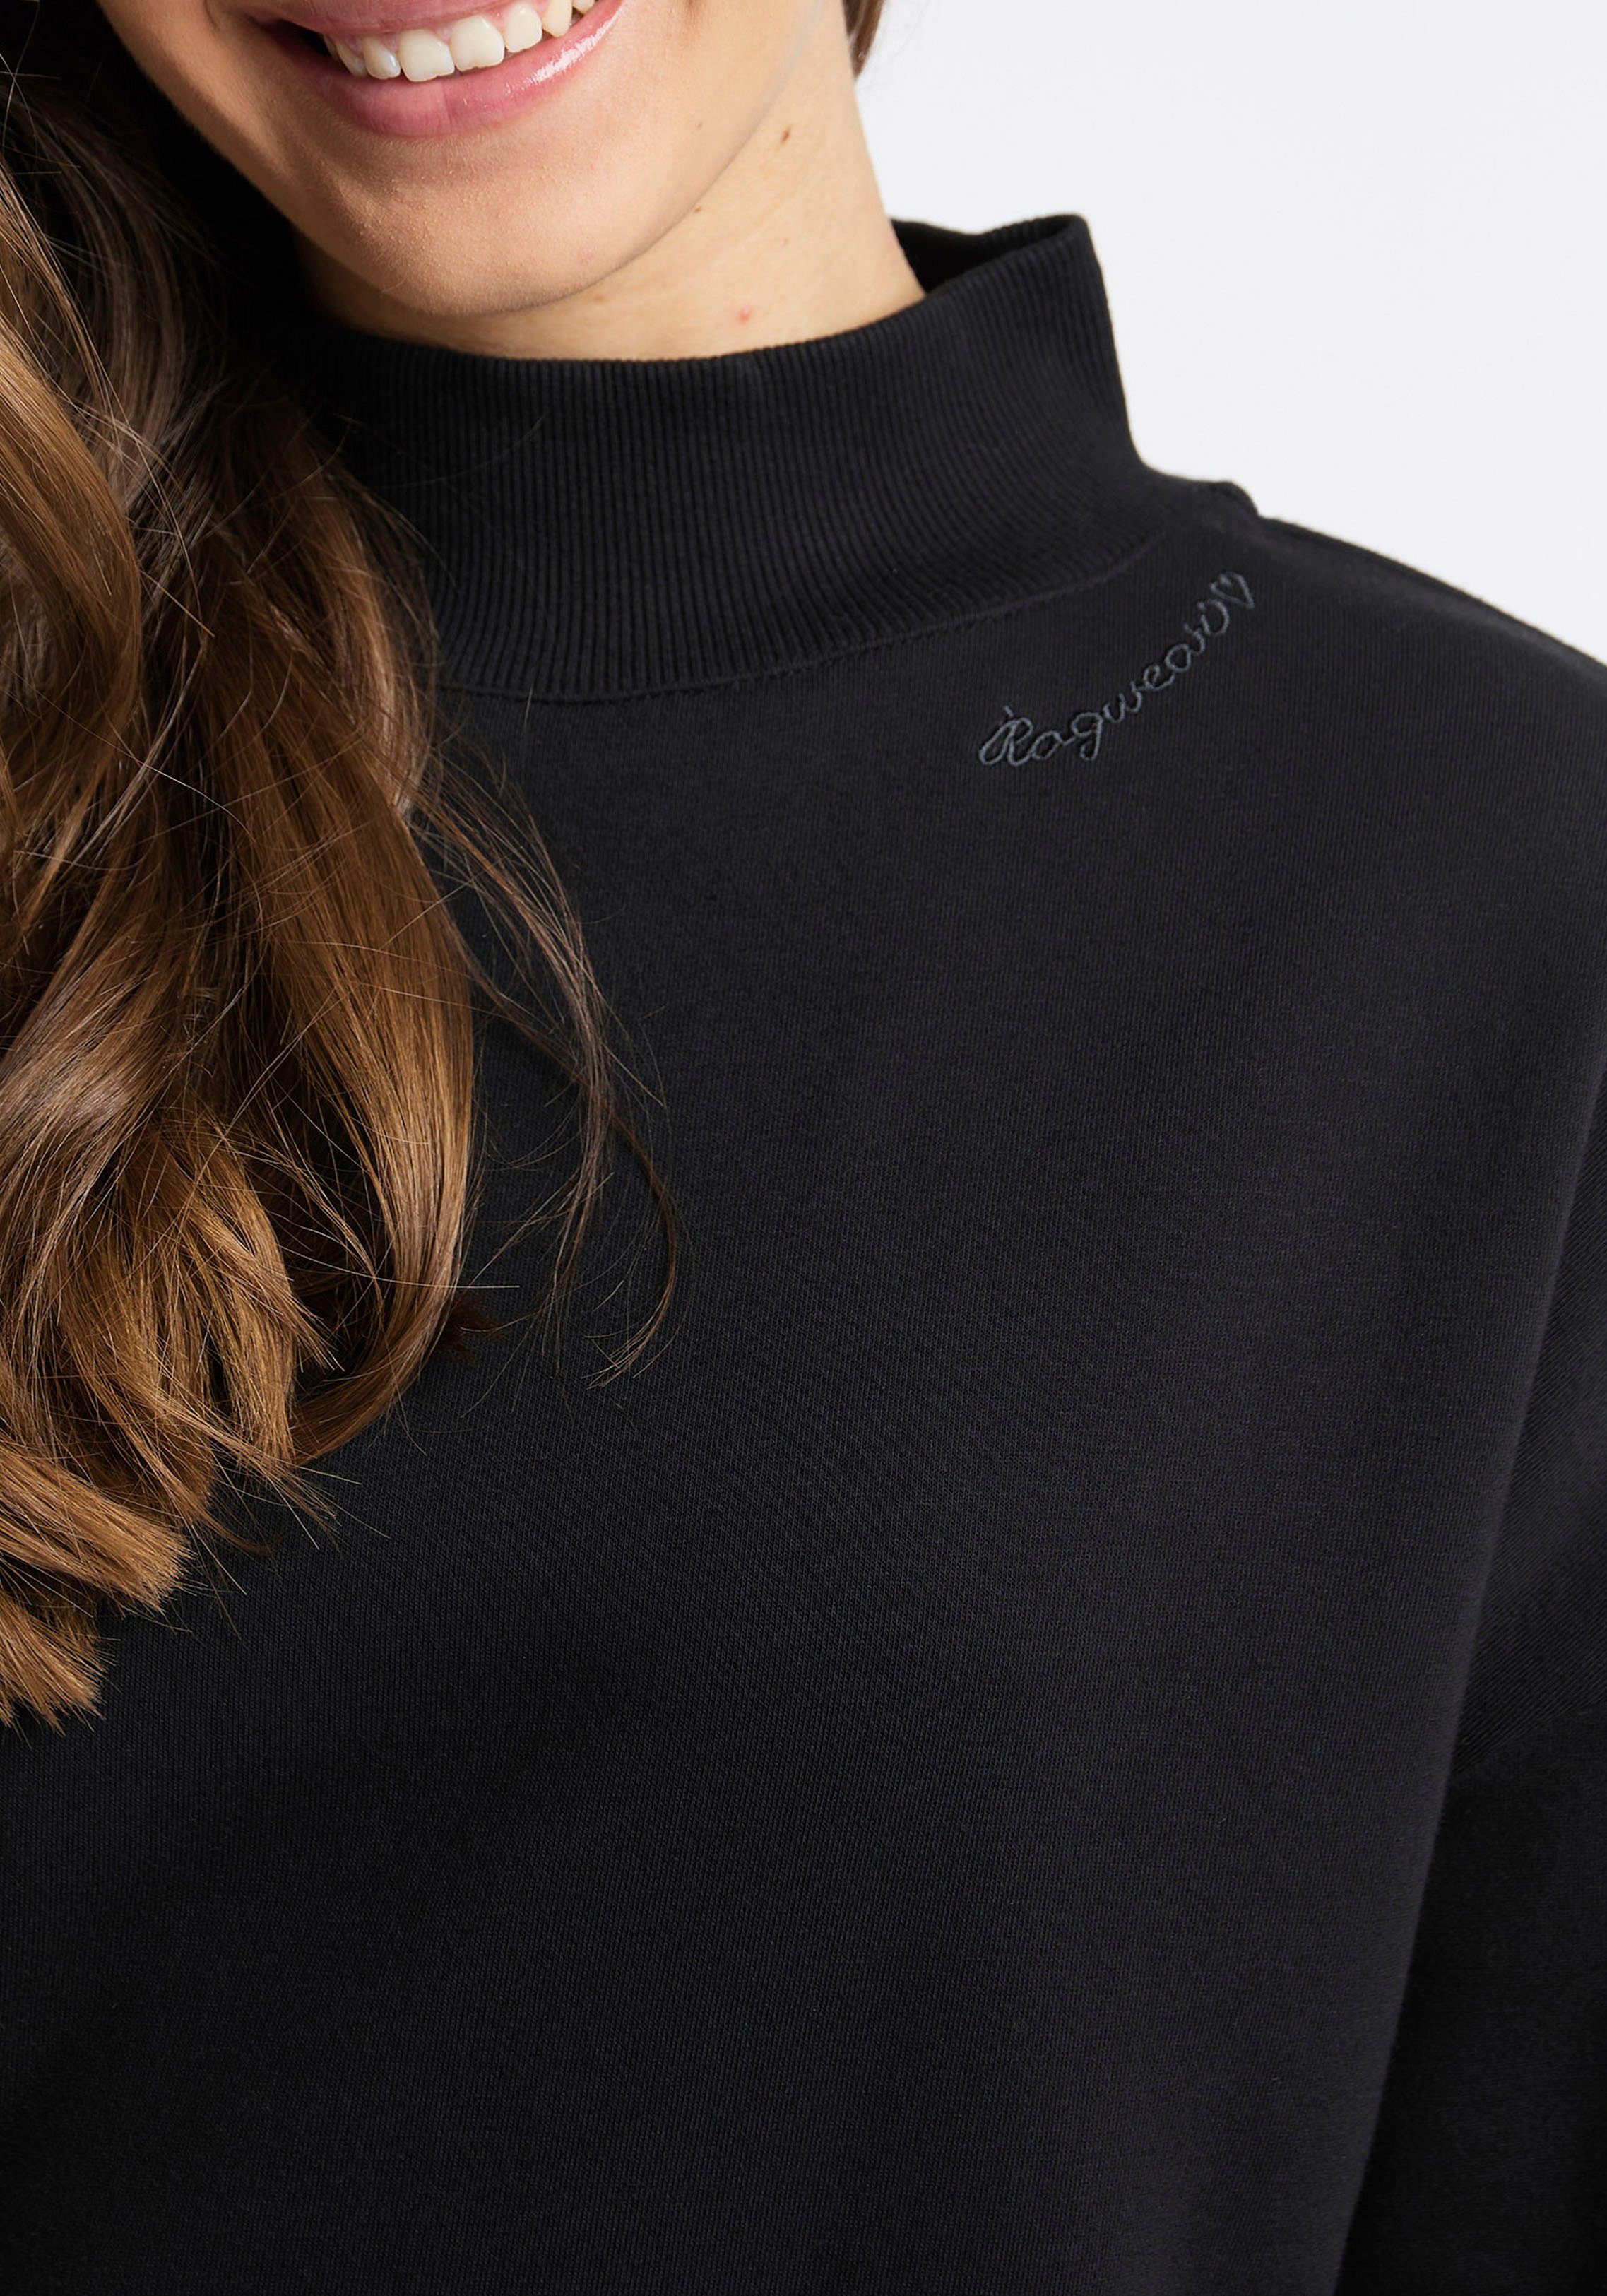 SWEAT black Sweater 1010 Ragwear KAILA